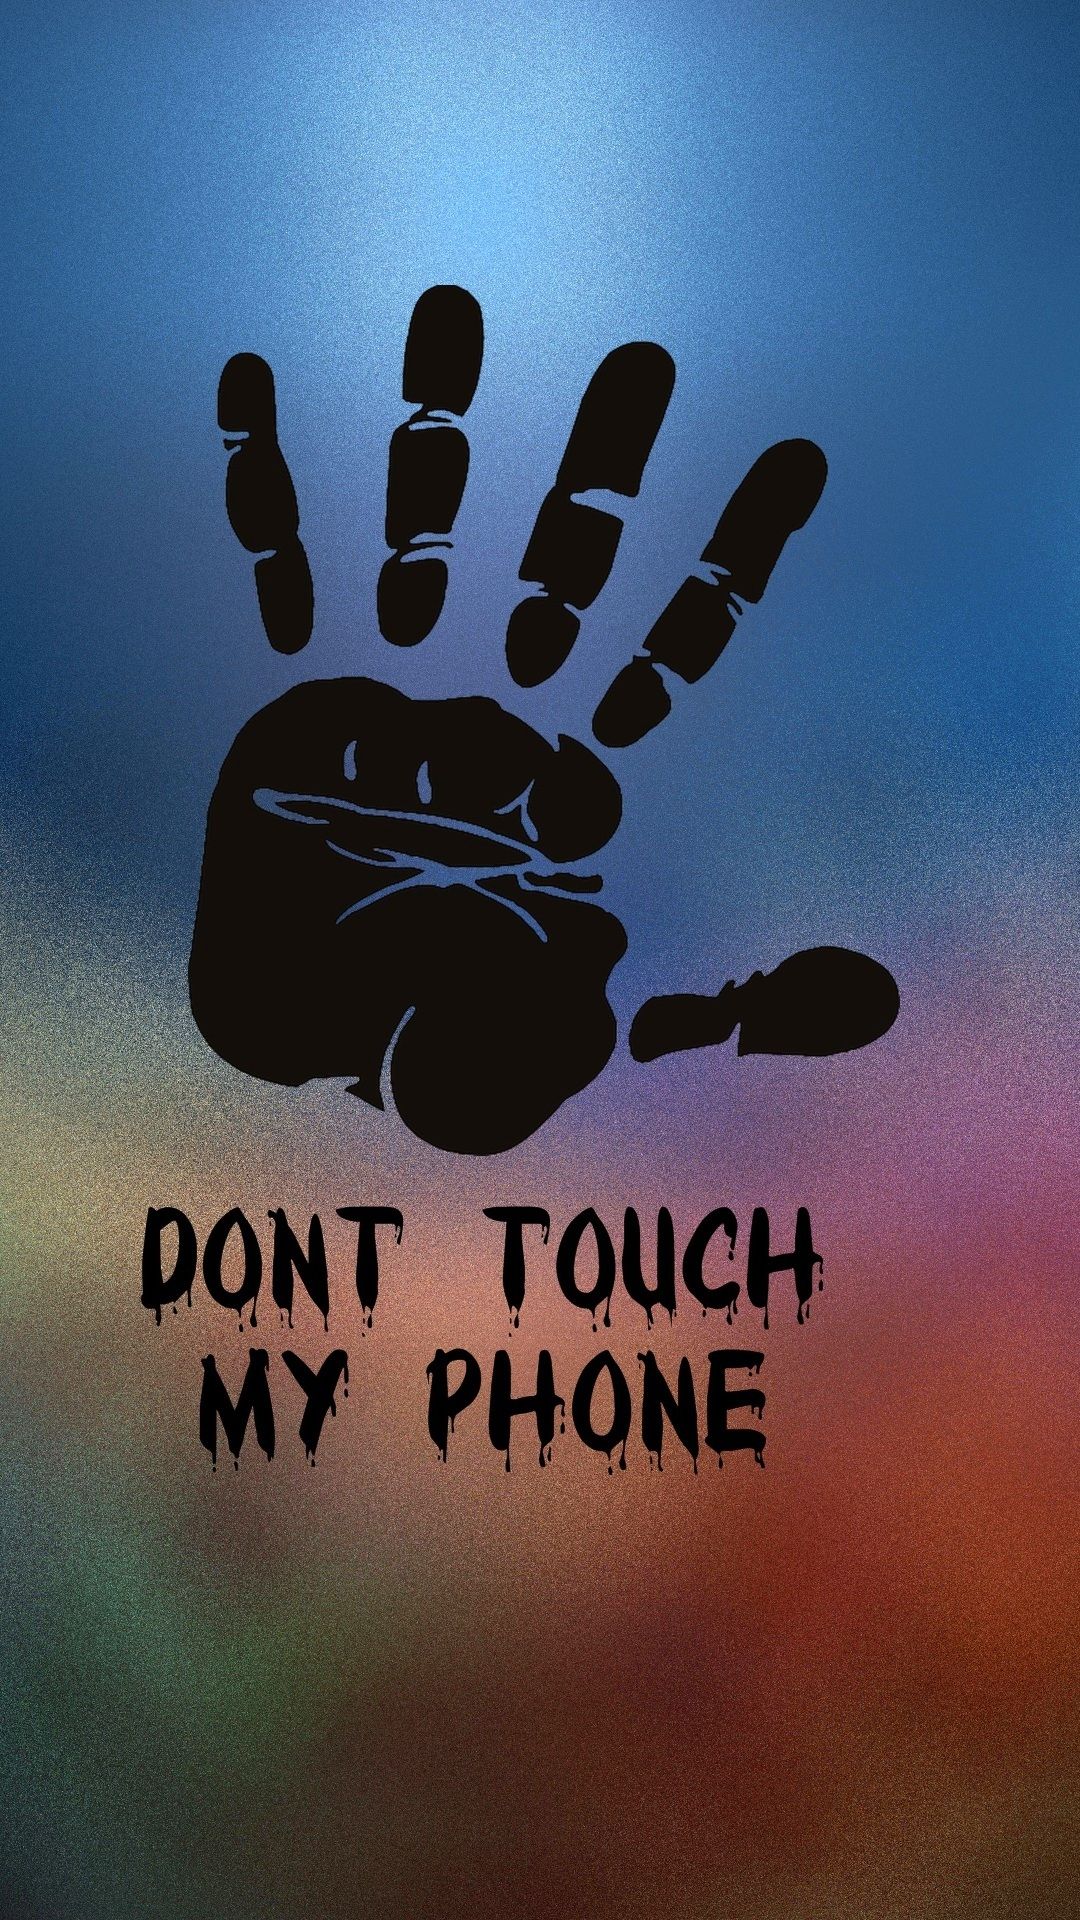 내 전화 벽지를 만지지 마십시오 hd,손,폰트,몸짓,제도법,스케이트 보드